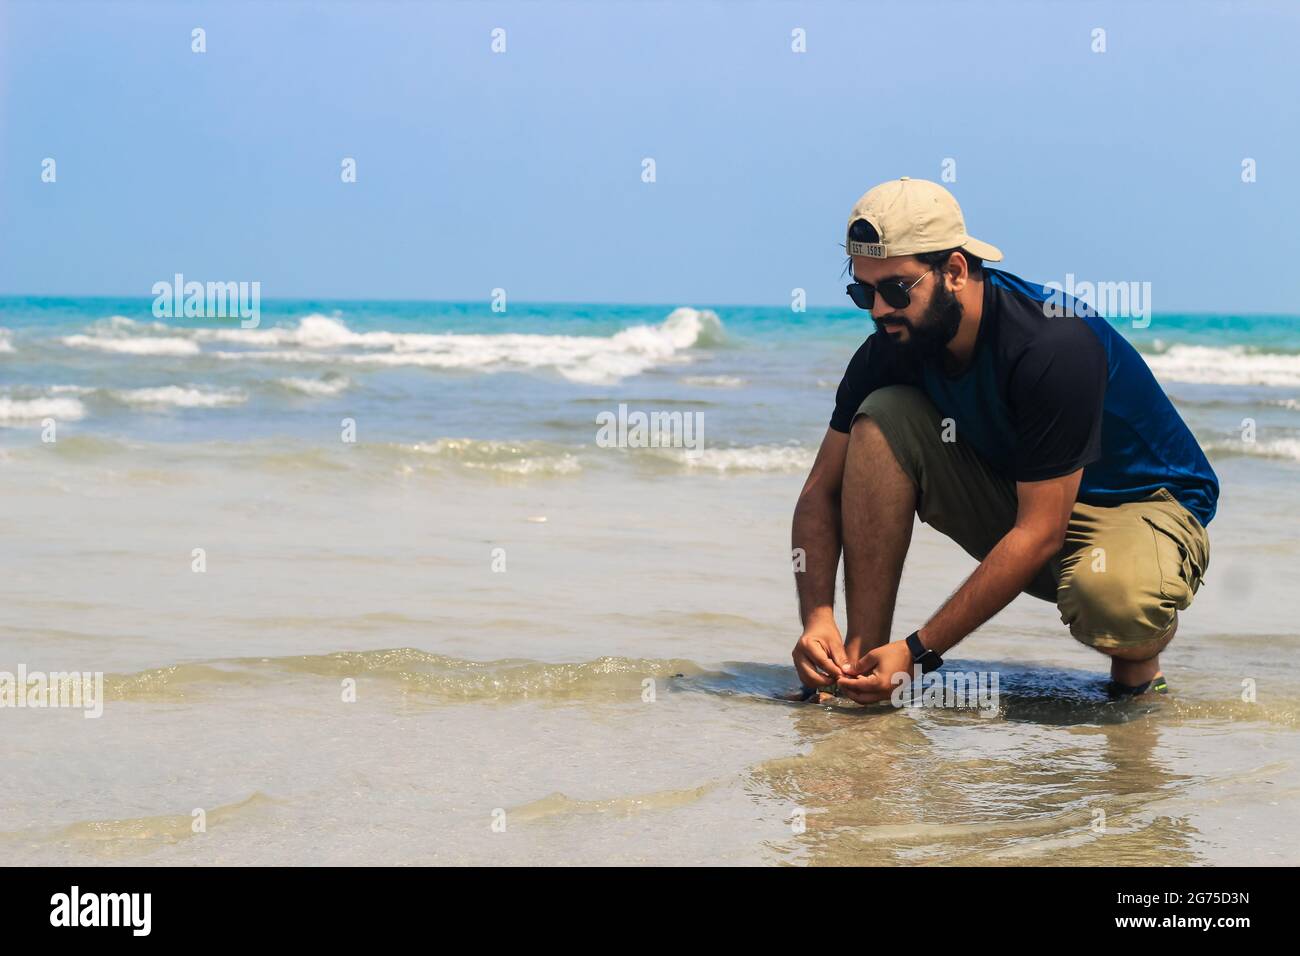 El joven junto al mar recoge conchas marinas en la playa. Puesta de sol, vacaciones de verano en el mar o en el océano. Un niño en la playa recogiendo conchas. Foto de stock